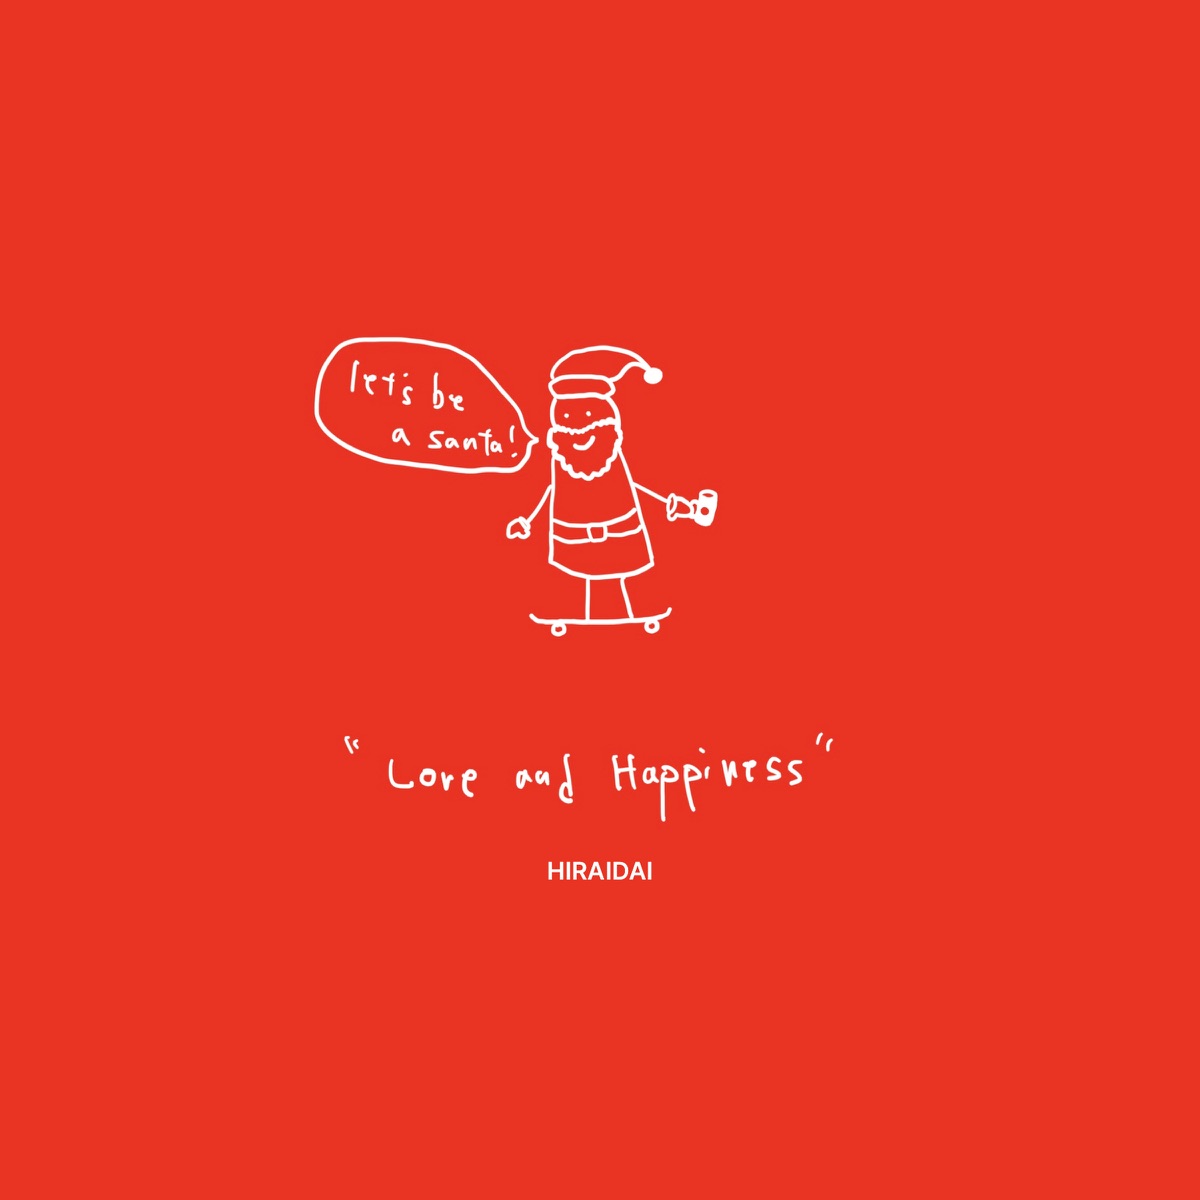 平井 大 - Love & Happiness (Let's Be a Santa)